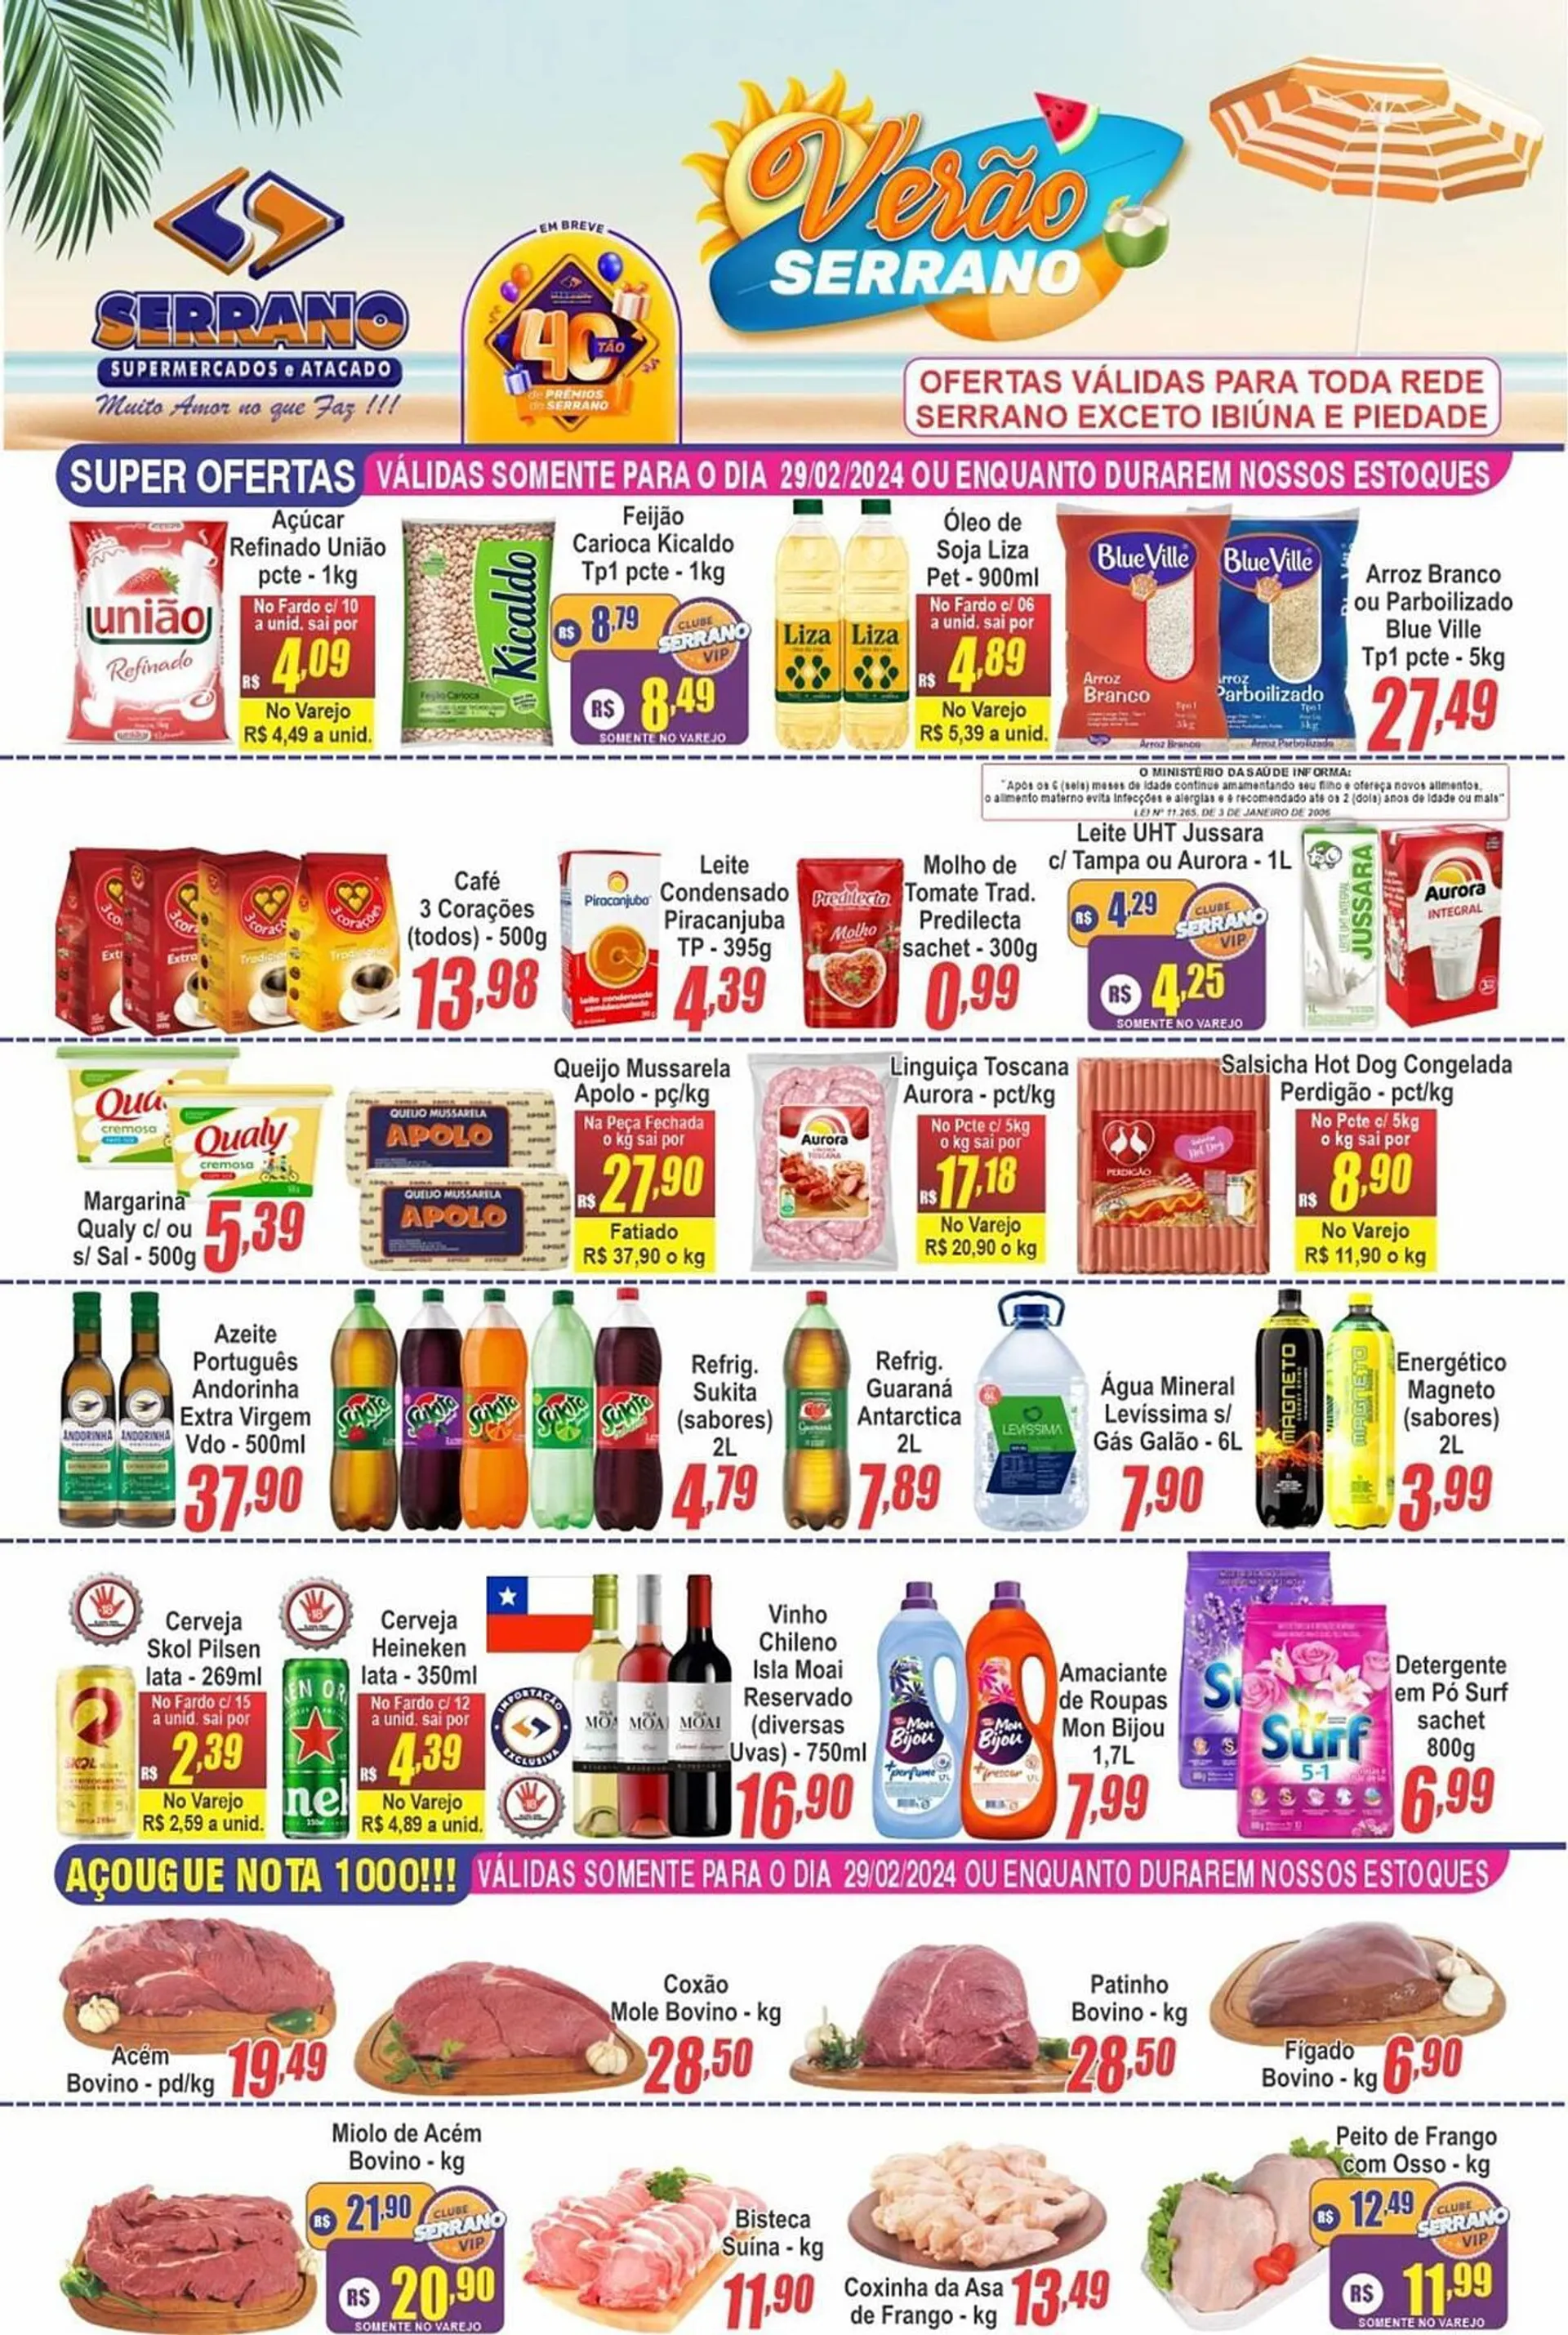 Encarte de Catálogo Serrano Supermercado 29 de fevereiro até 6 de março 2024 - Pagina 